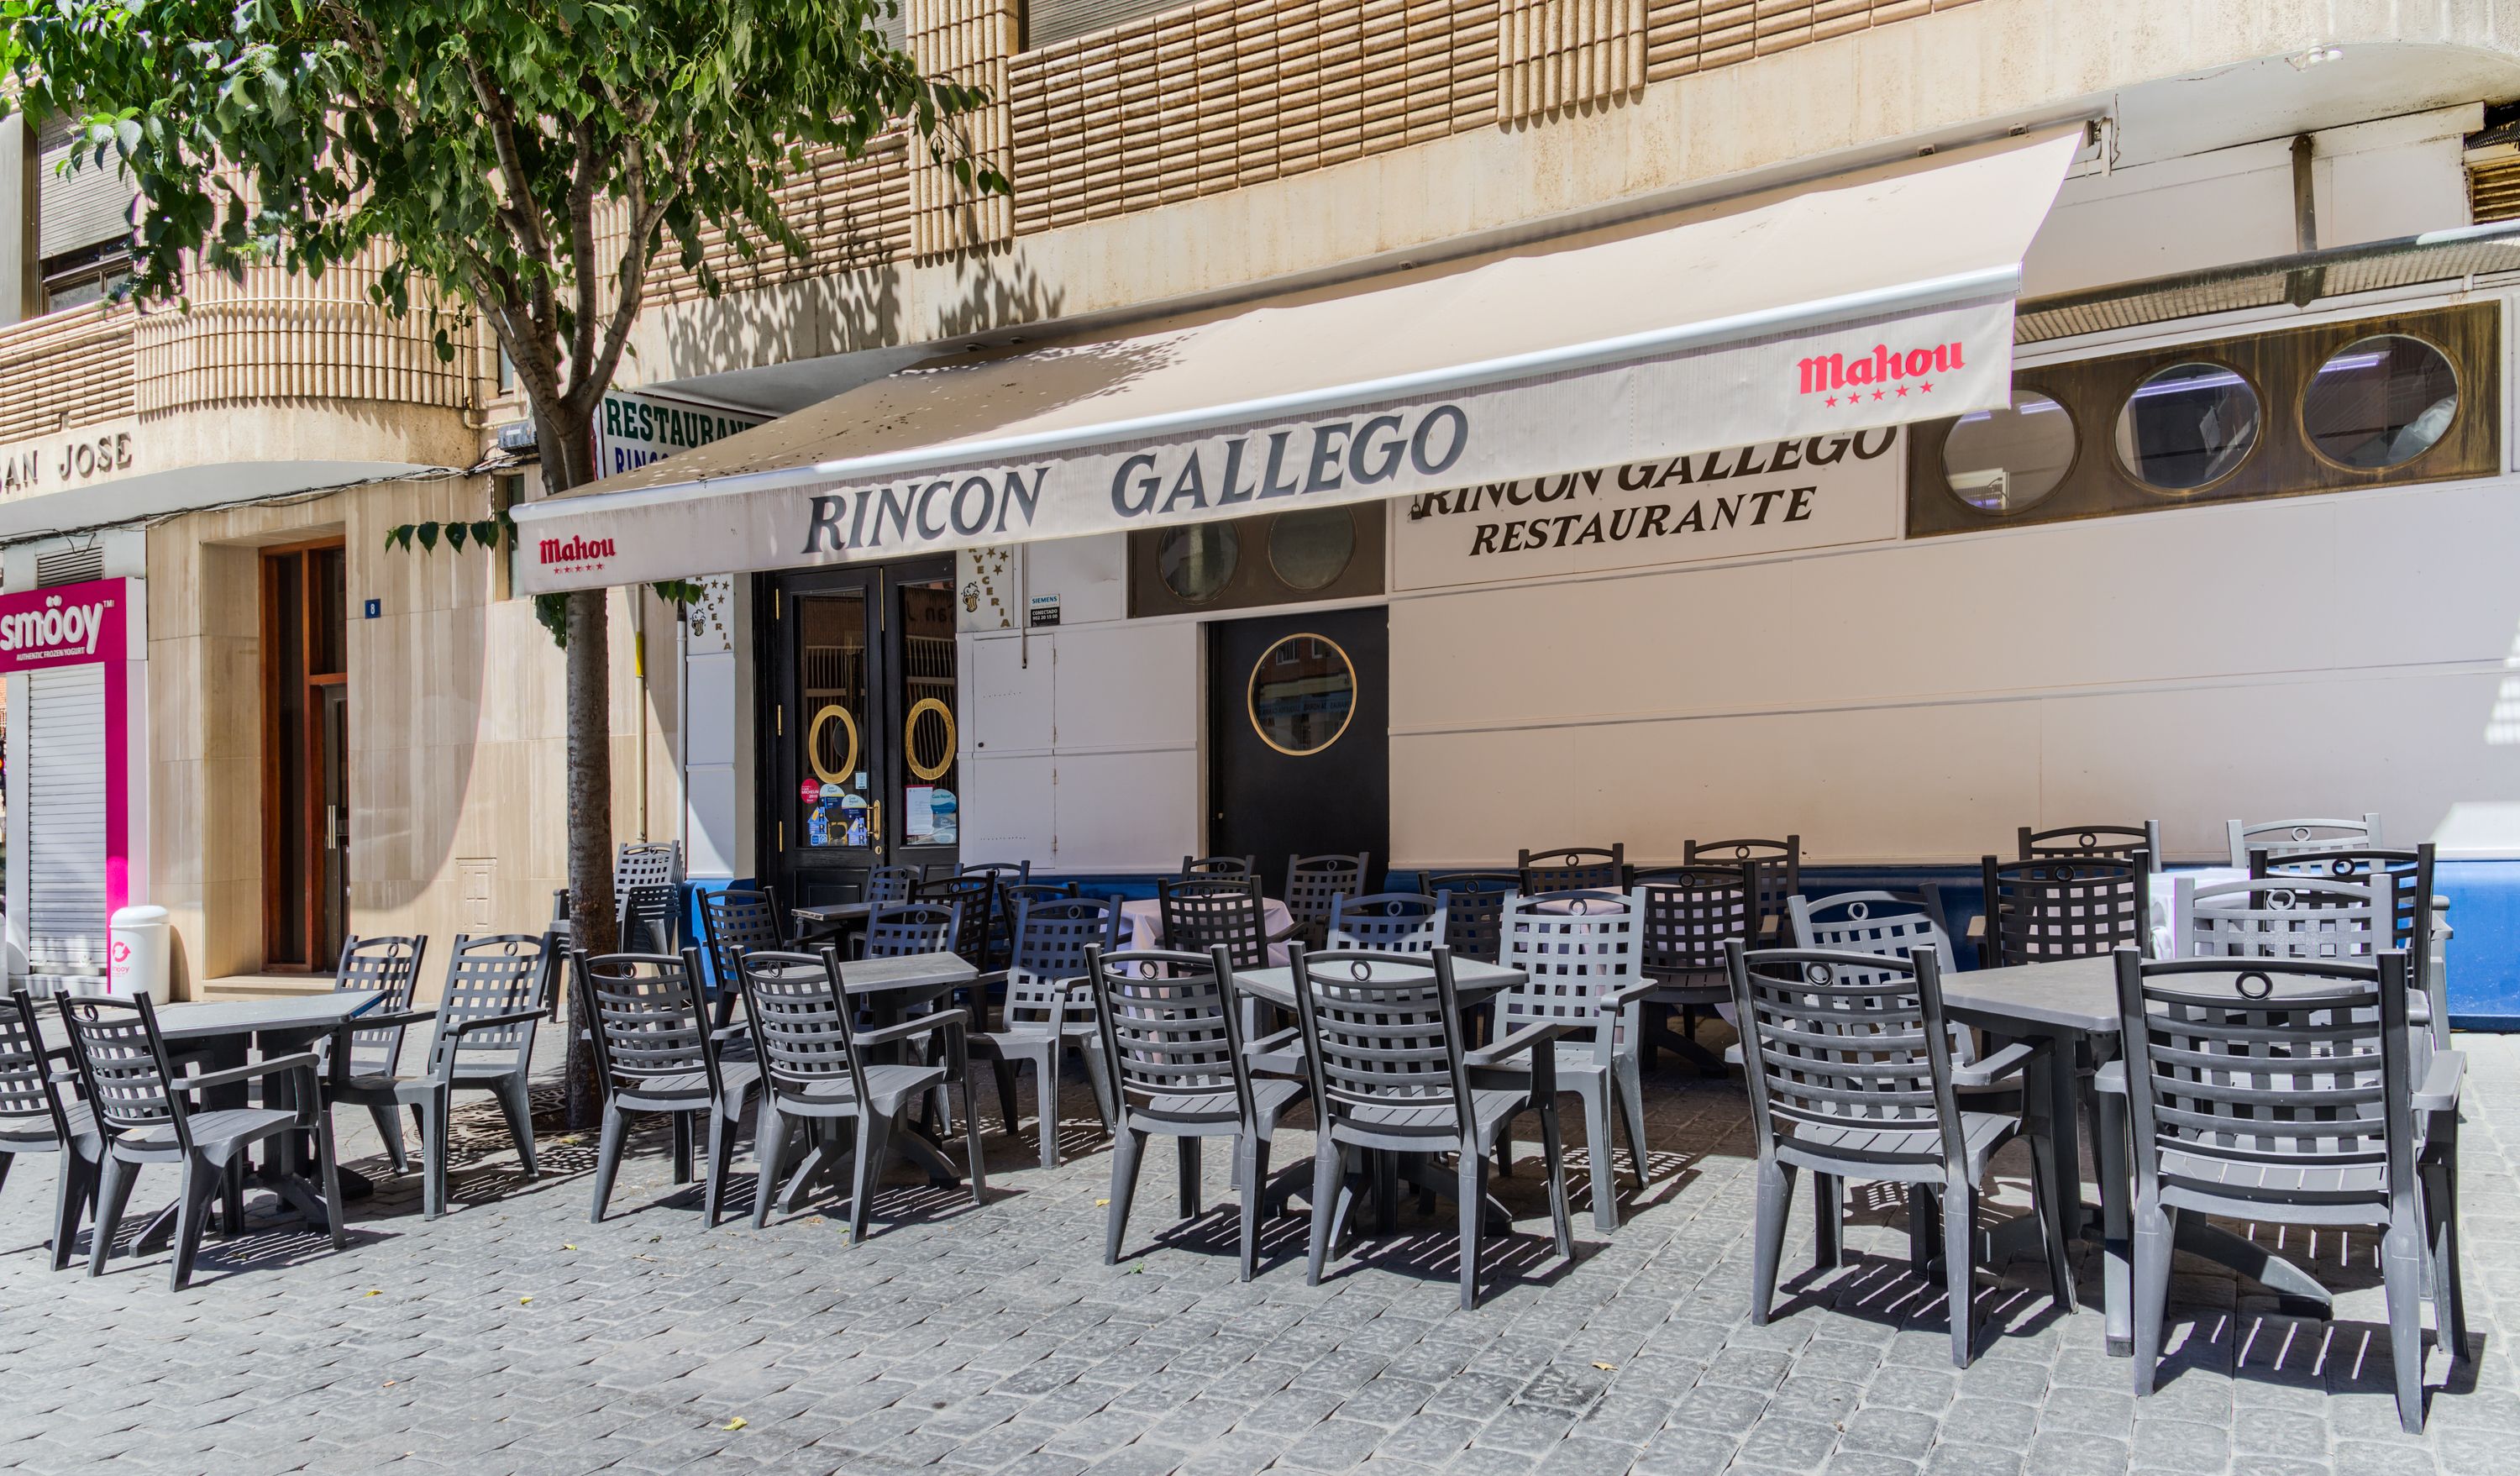 Foto 35 de Restaurante en Albacete | Restaurante Rincón Gallego de Albacete